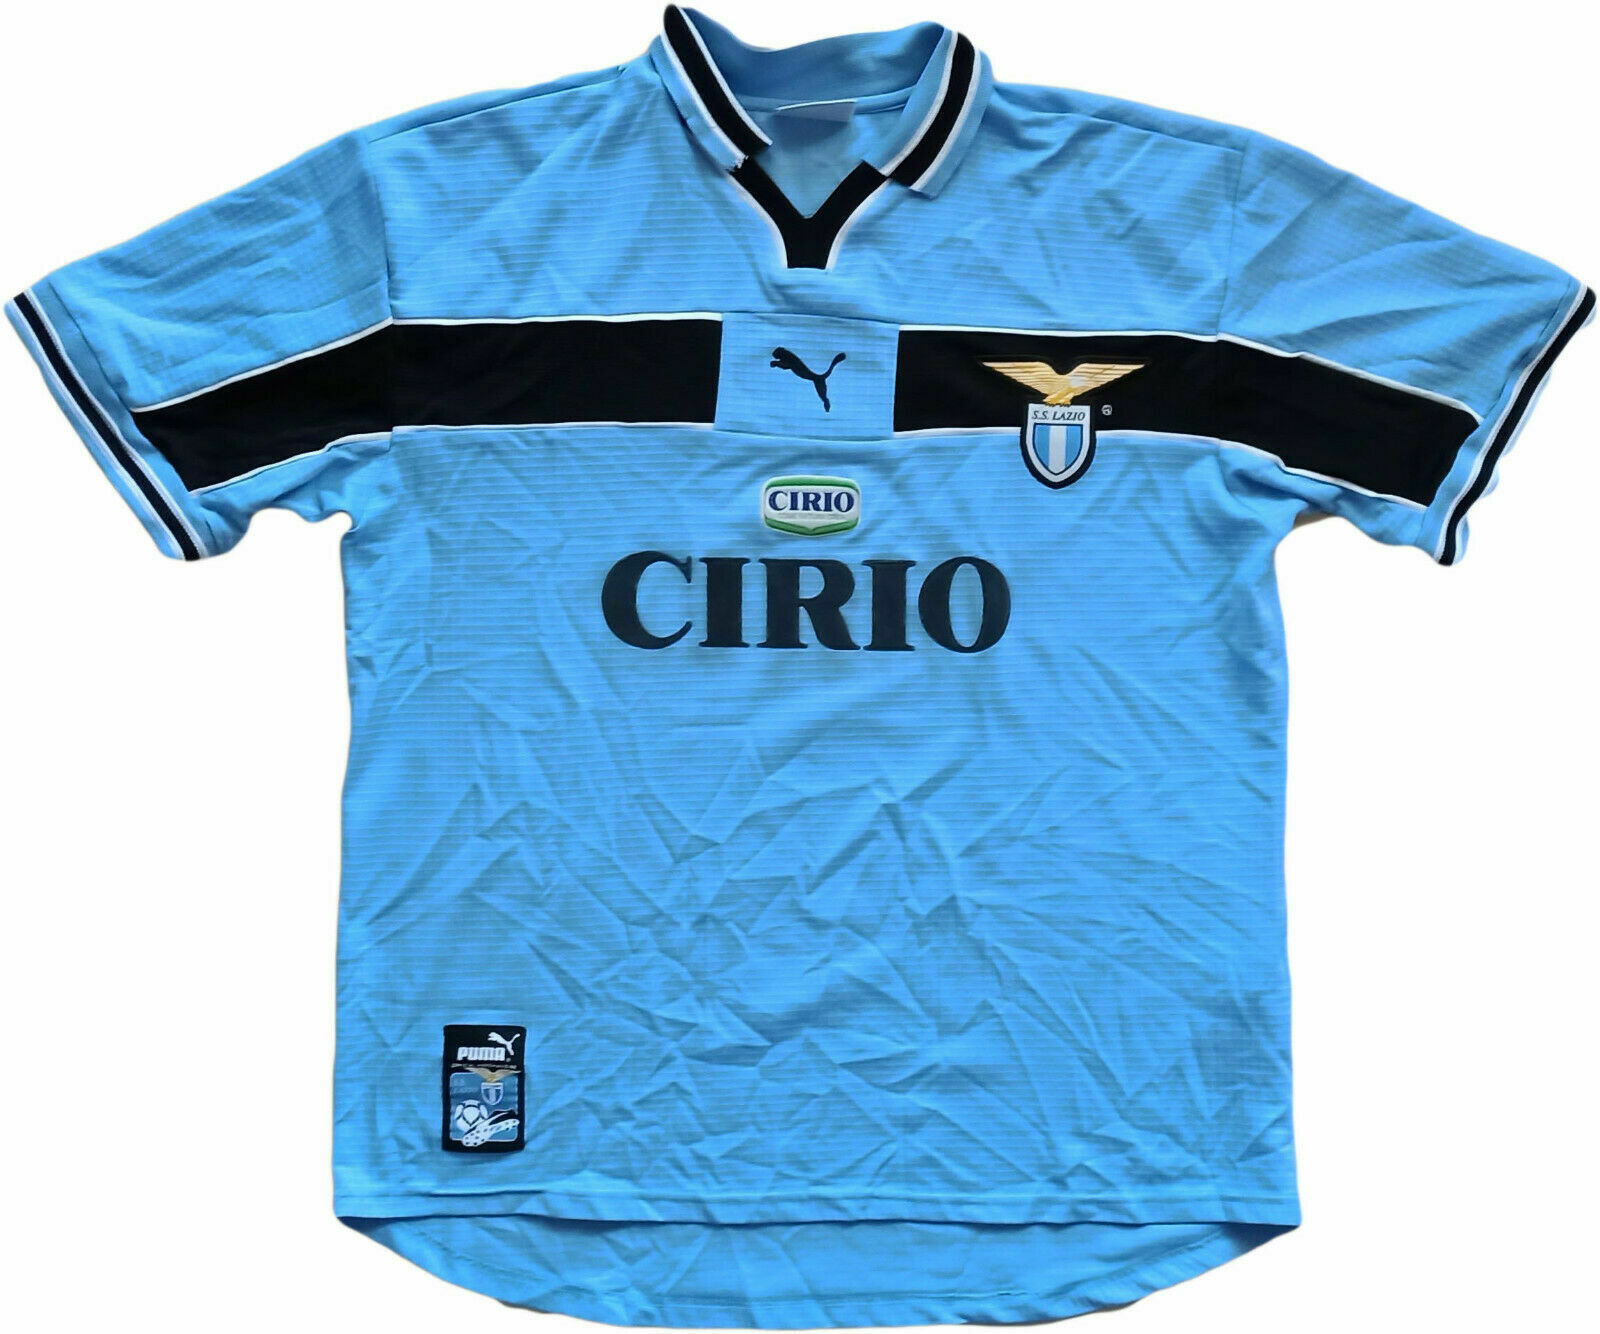 Lazio 99-00